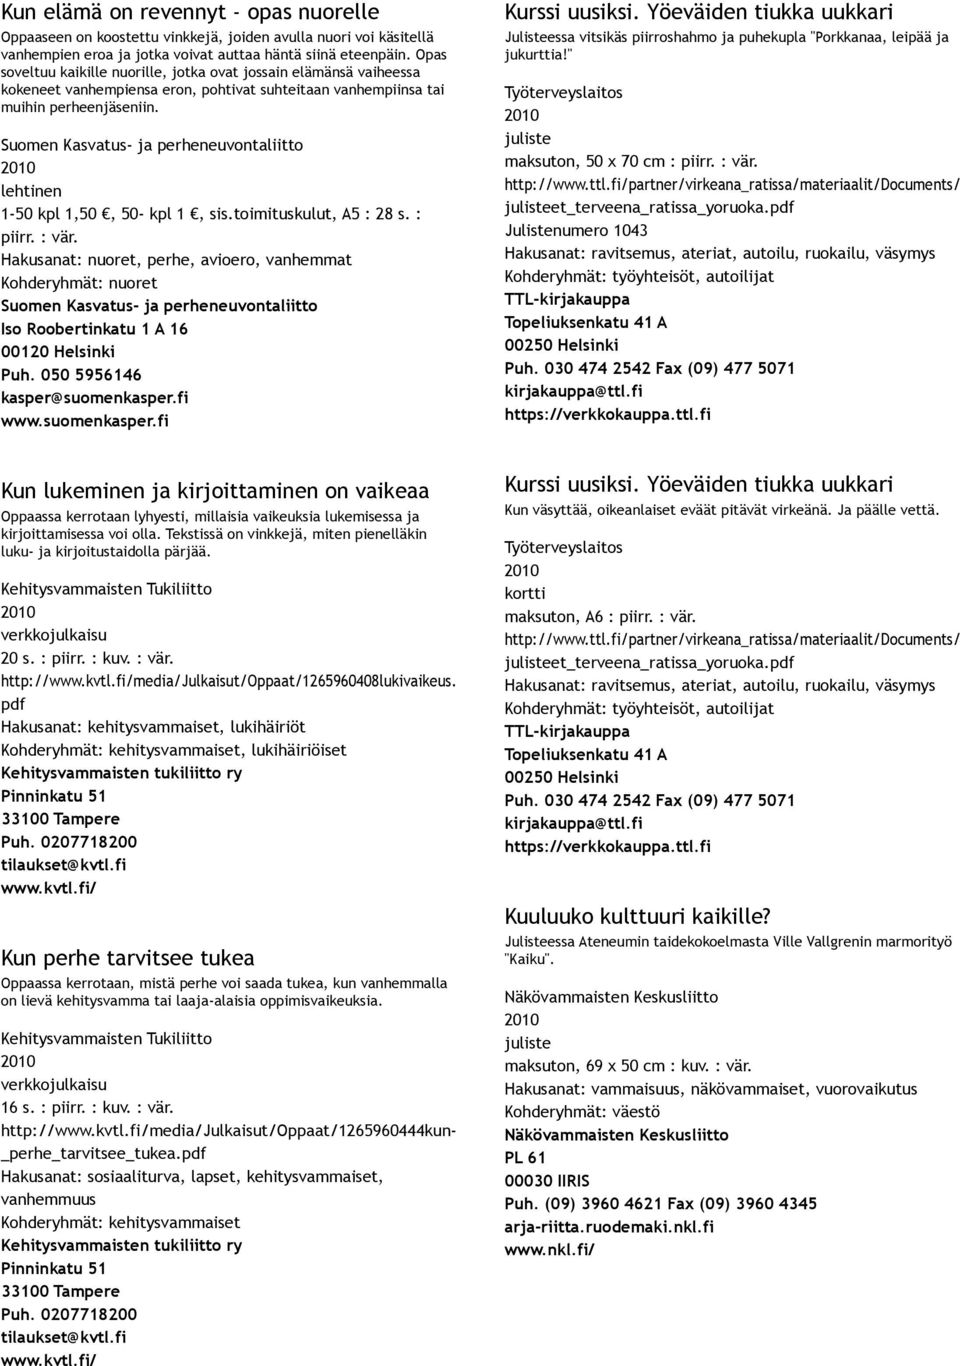 Suomen Kasvatus ja perheneuvontaliitto 1 50 kpl 1,50, 50 kpl 1, sis.toimituskulut, A5 : 28 s. : piirr. : vär.